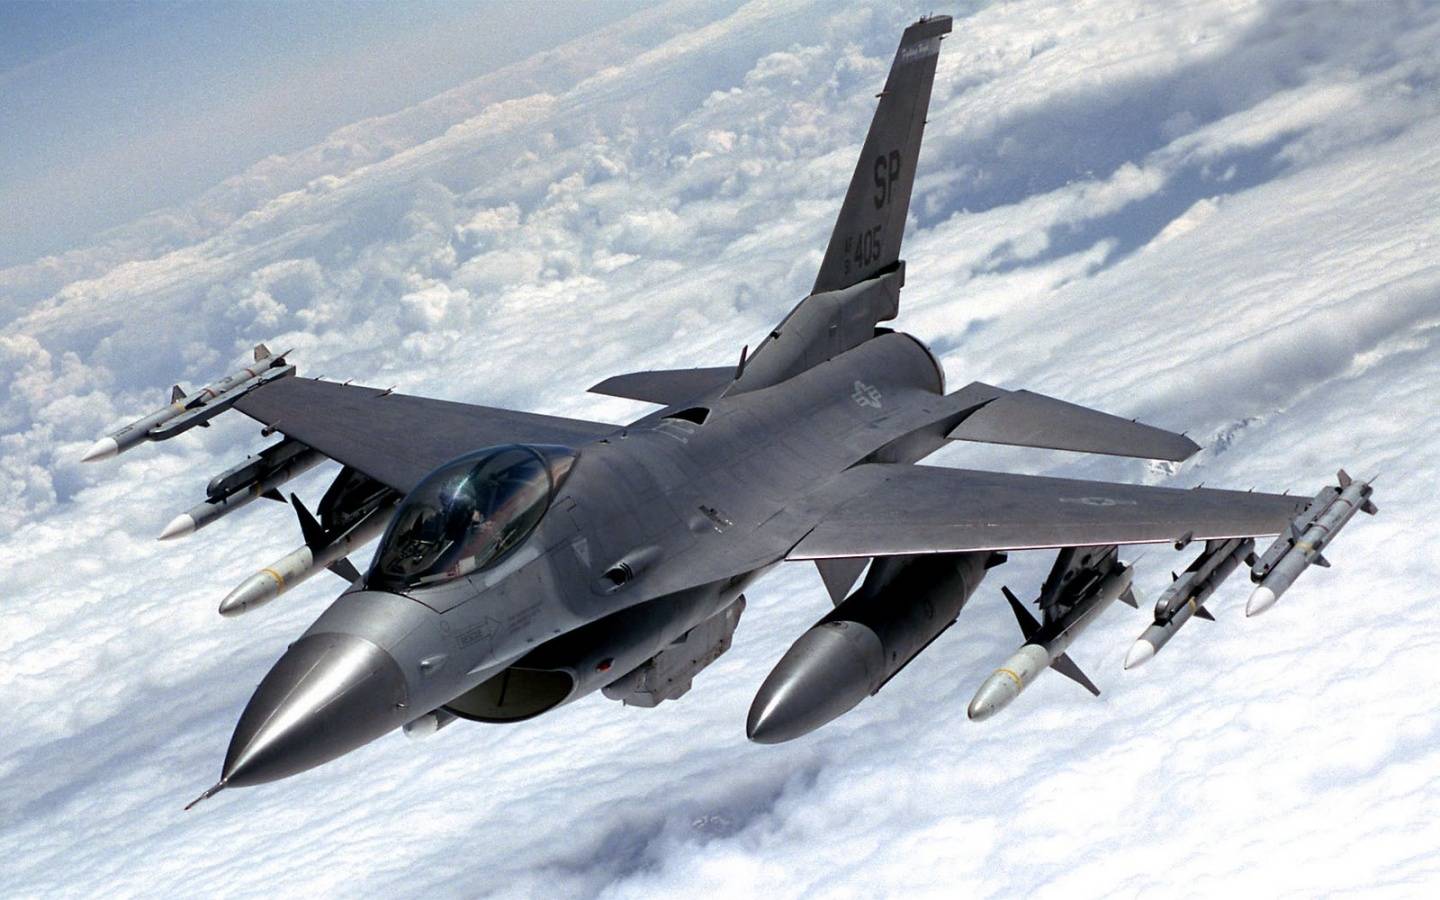 F 16 американский истребитель бомбардировщик, технические характеристики ттх, скорость, боевая нагрузка и применение, тяга двигателя